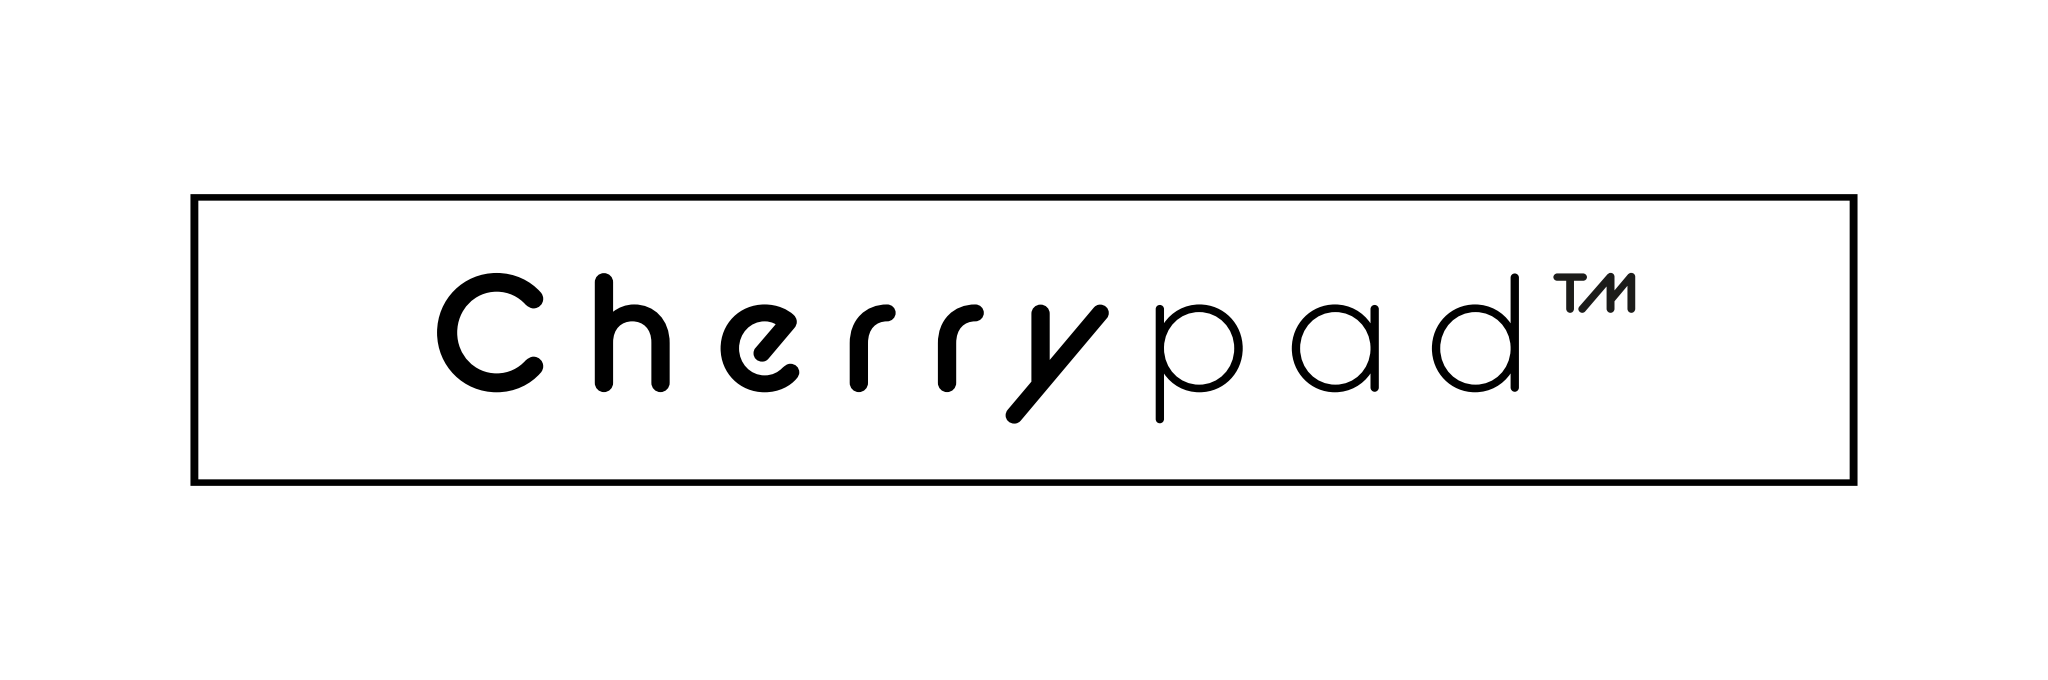 Cherrypad™